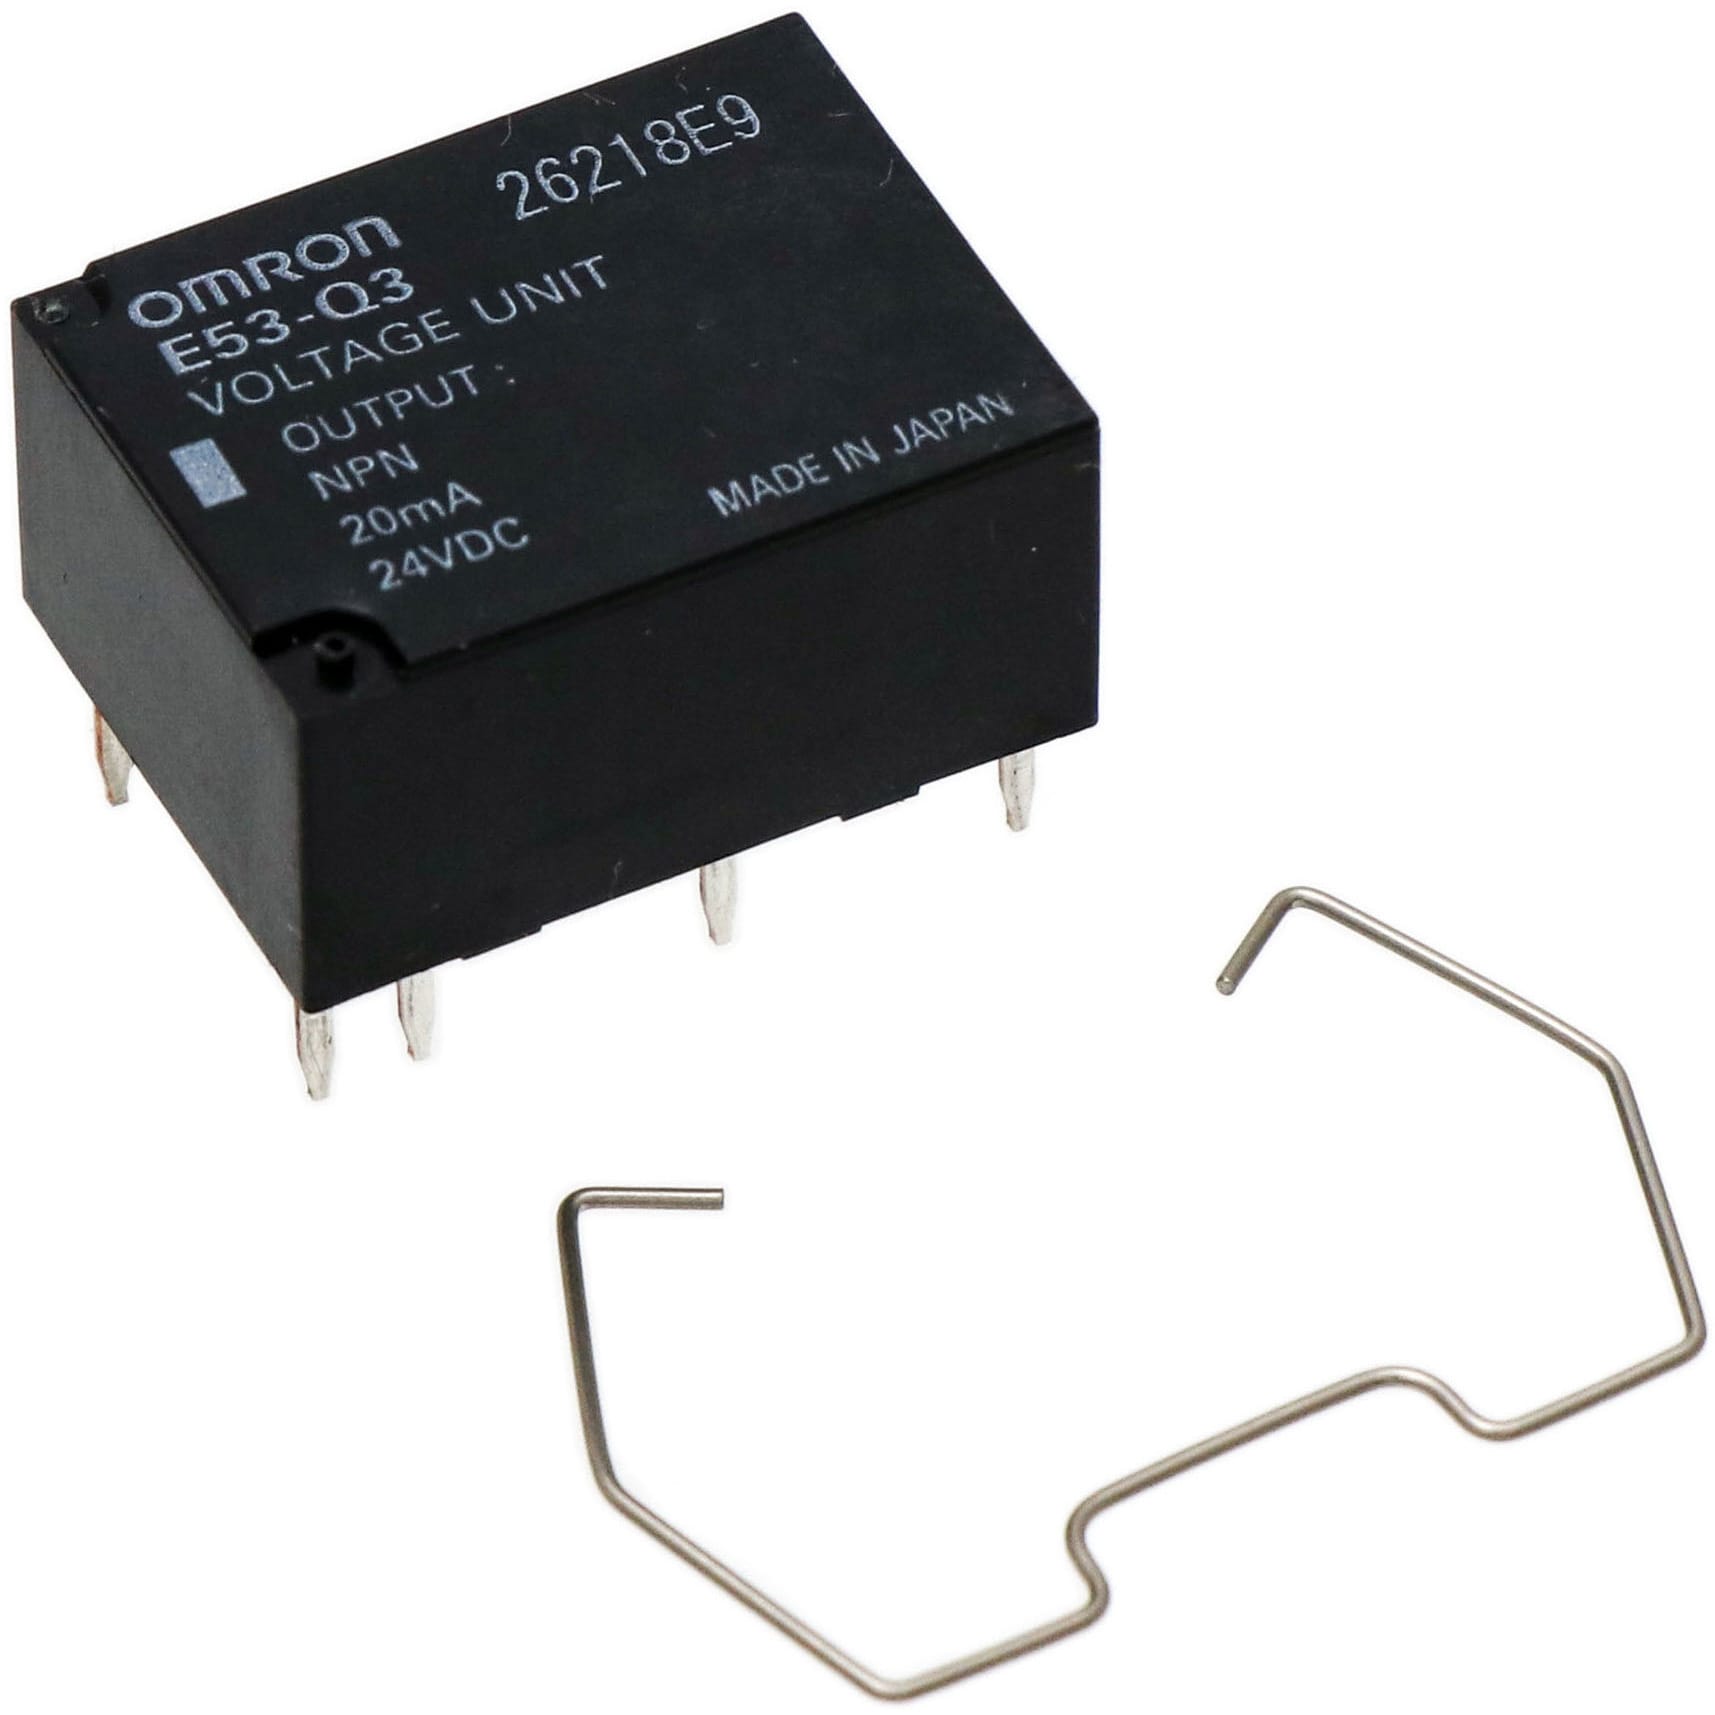 E53-Q3 温度調節器(デジタル調節計)形E5AK/E5AK-T用制御出力ユニット 1